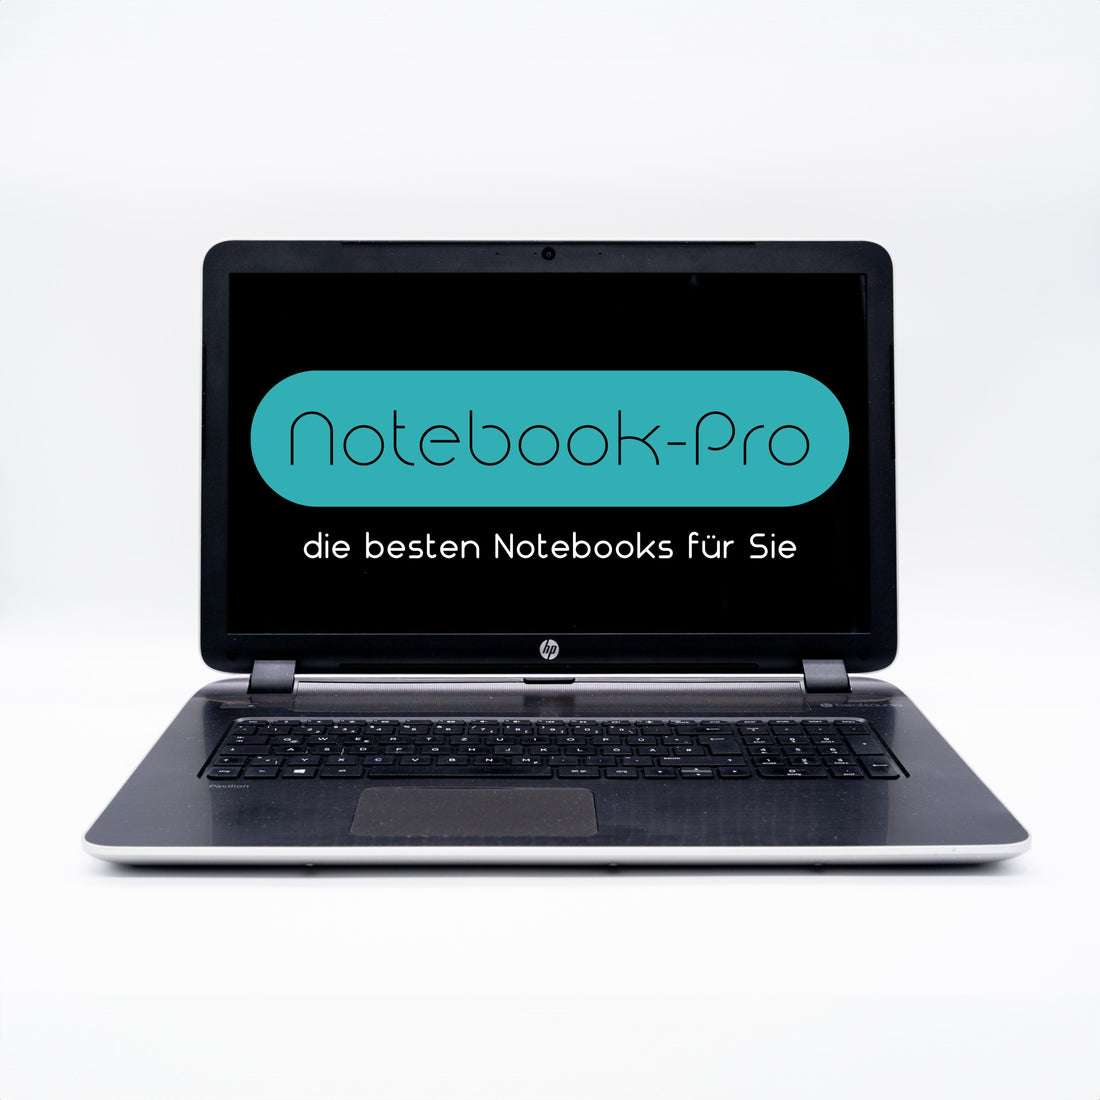 HP Notebook Intel Core i7-5500U 256GB SSD NVIDIA 940M DVD/RW Laptops Notebook-Pro Intel Core i7- 8650U 16GB DDR4 256GB